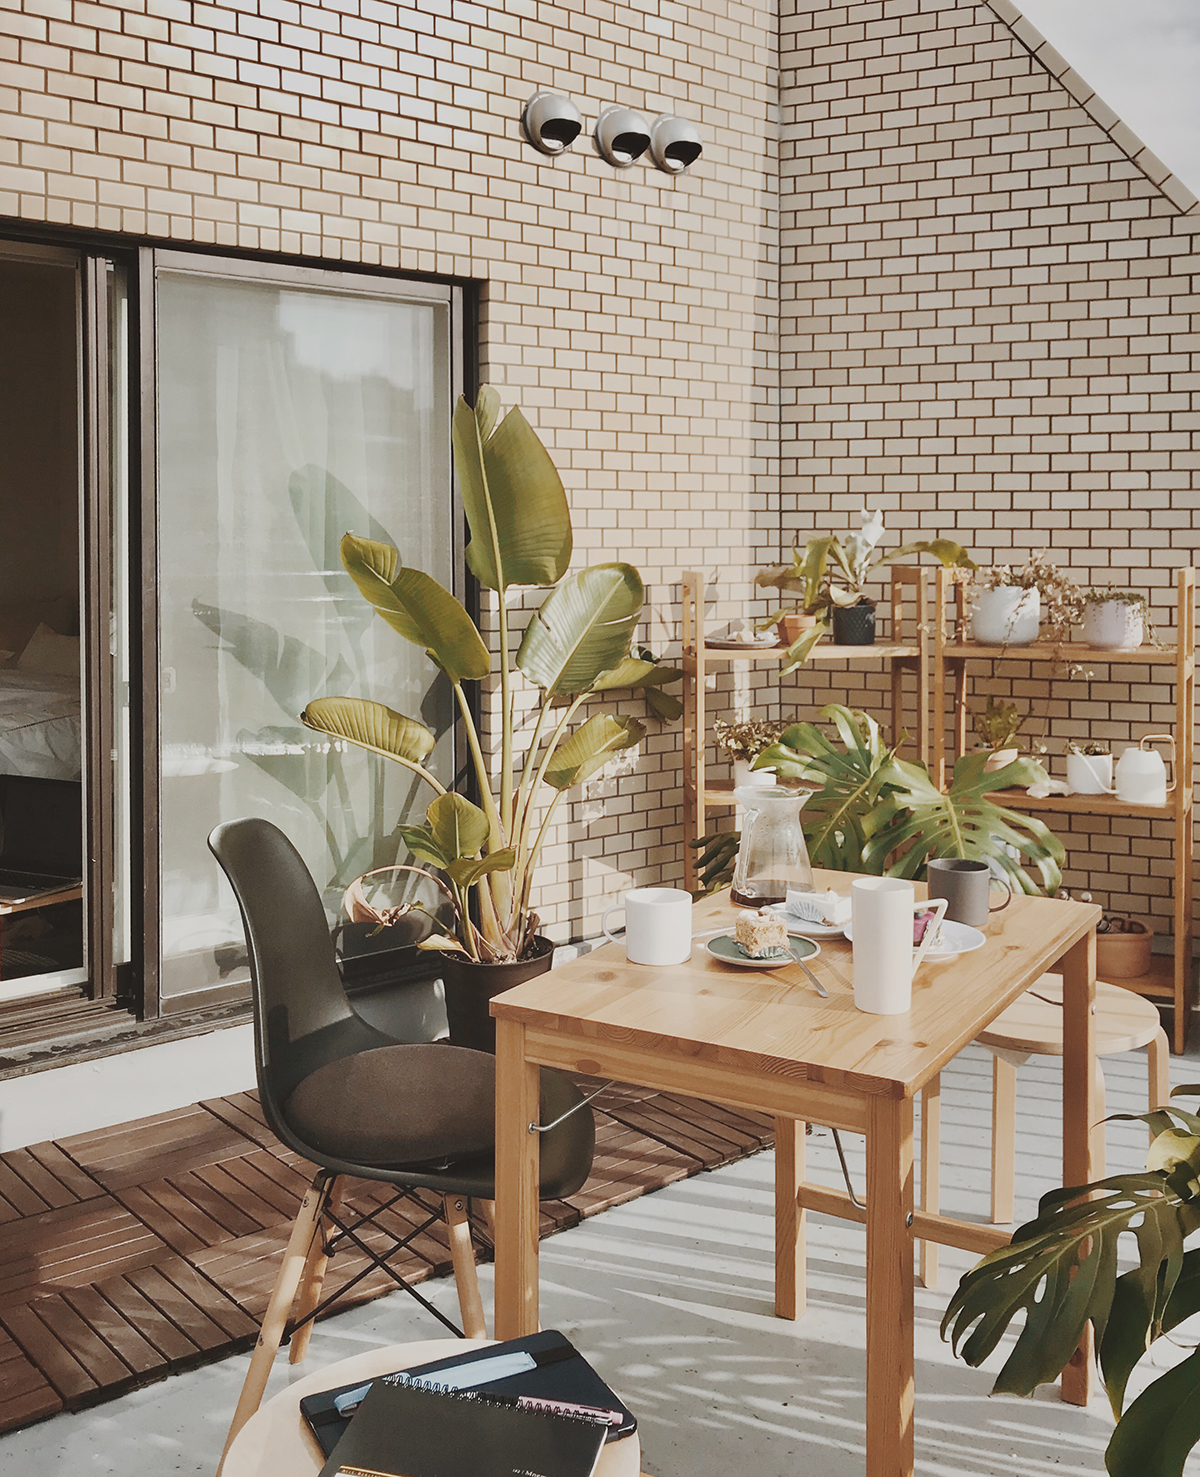 Vì diện tích căn hộ cho thuê rất 'khiêm tốn' nên Li Yunzhen đã thiết kế phòng khách ngoài trời với bàn gỗ xinh xắn, xung quanh là nhiều chậu cây cảnh tươi xanh.